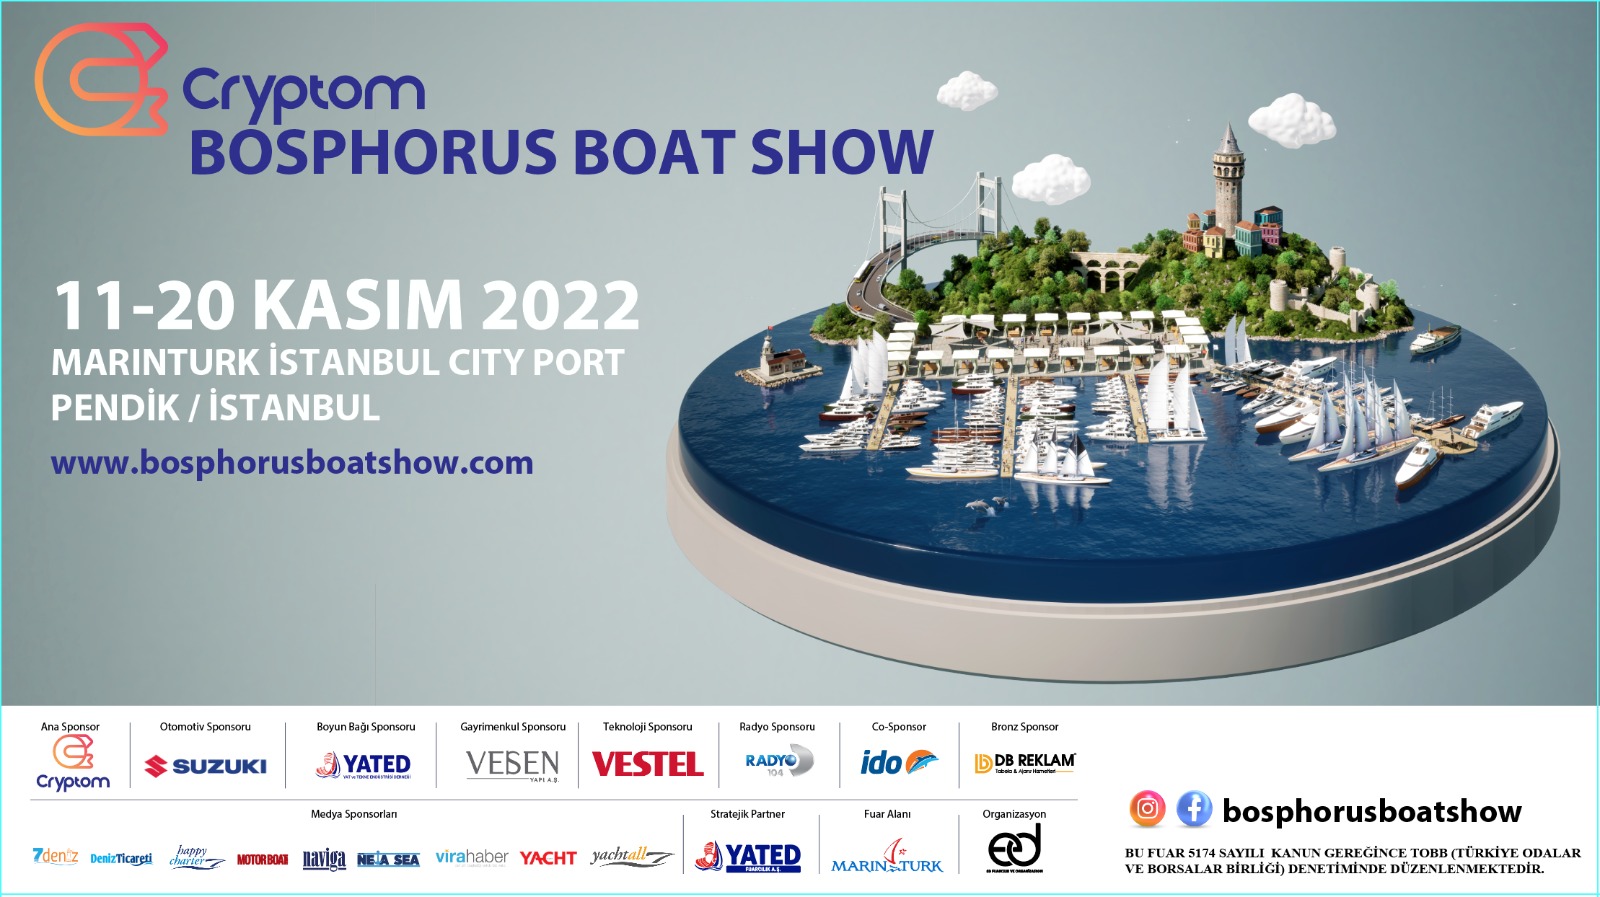 Denizcilik Sektörü MarinTurk Cryptom Bosphorus Boat Show’da  Buluşuyor!